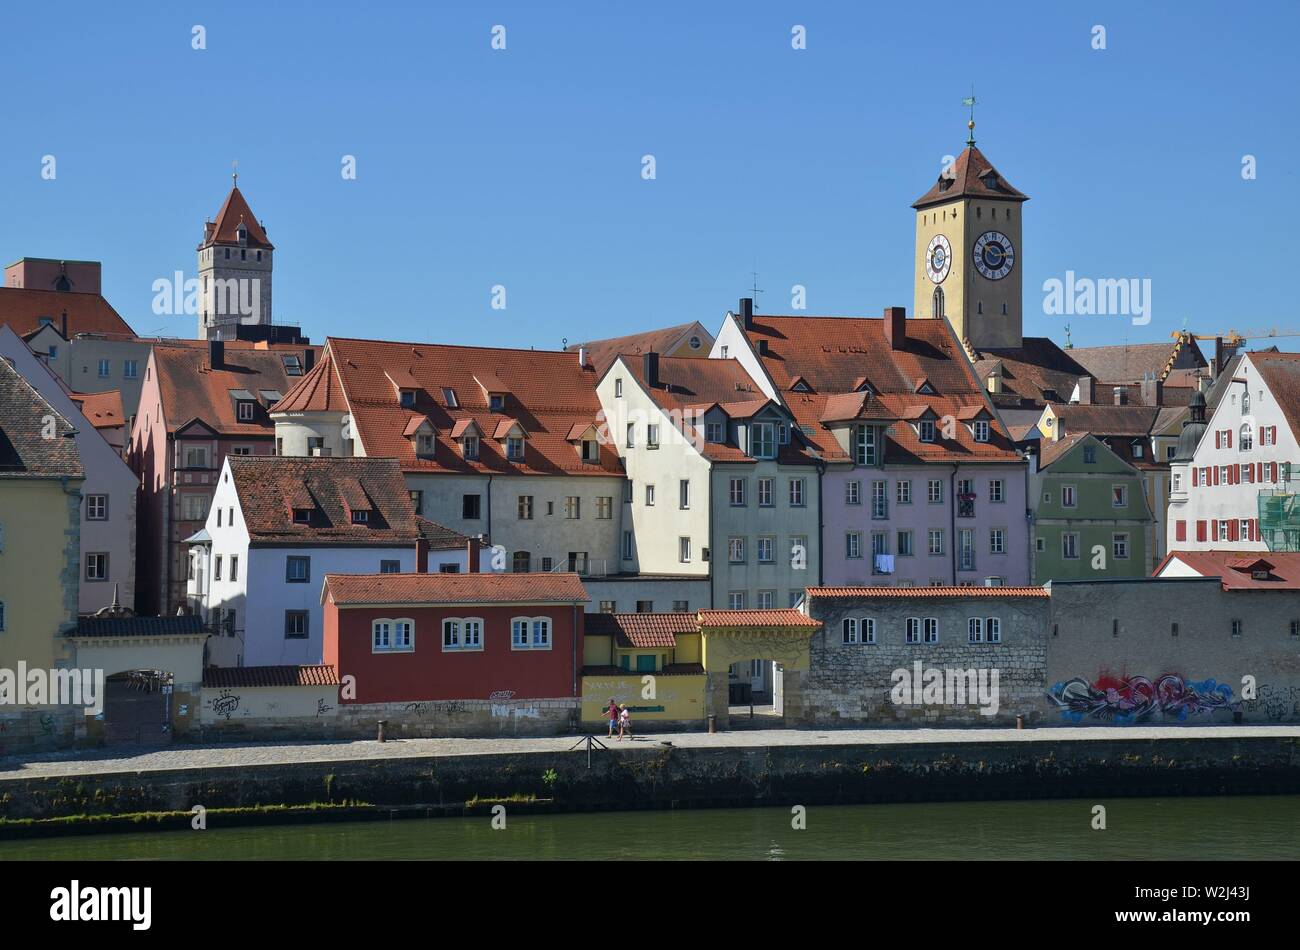 Regensburg, Oberpfalz, Bayern : historische Stadt an der Donau : Blick von der steinernen Brücke auf die Altstadt Banque D'Images